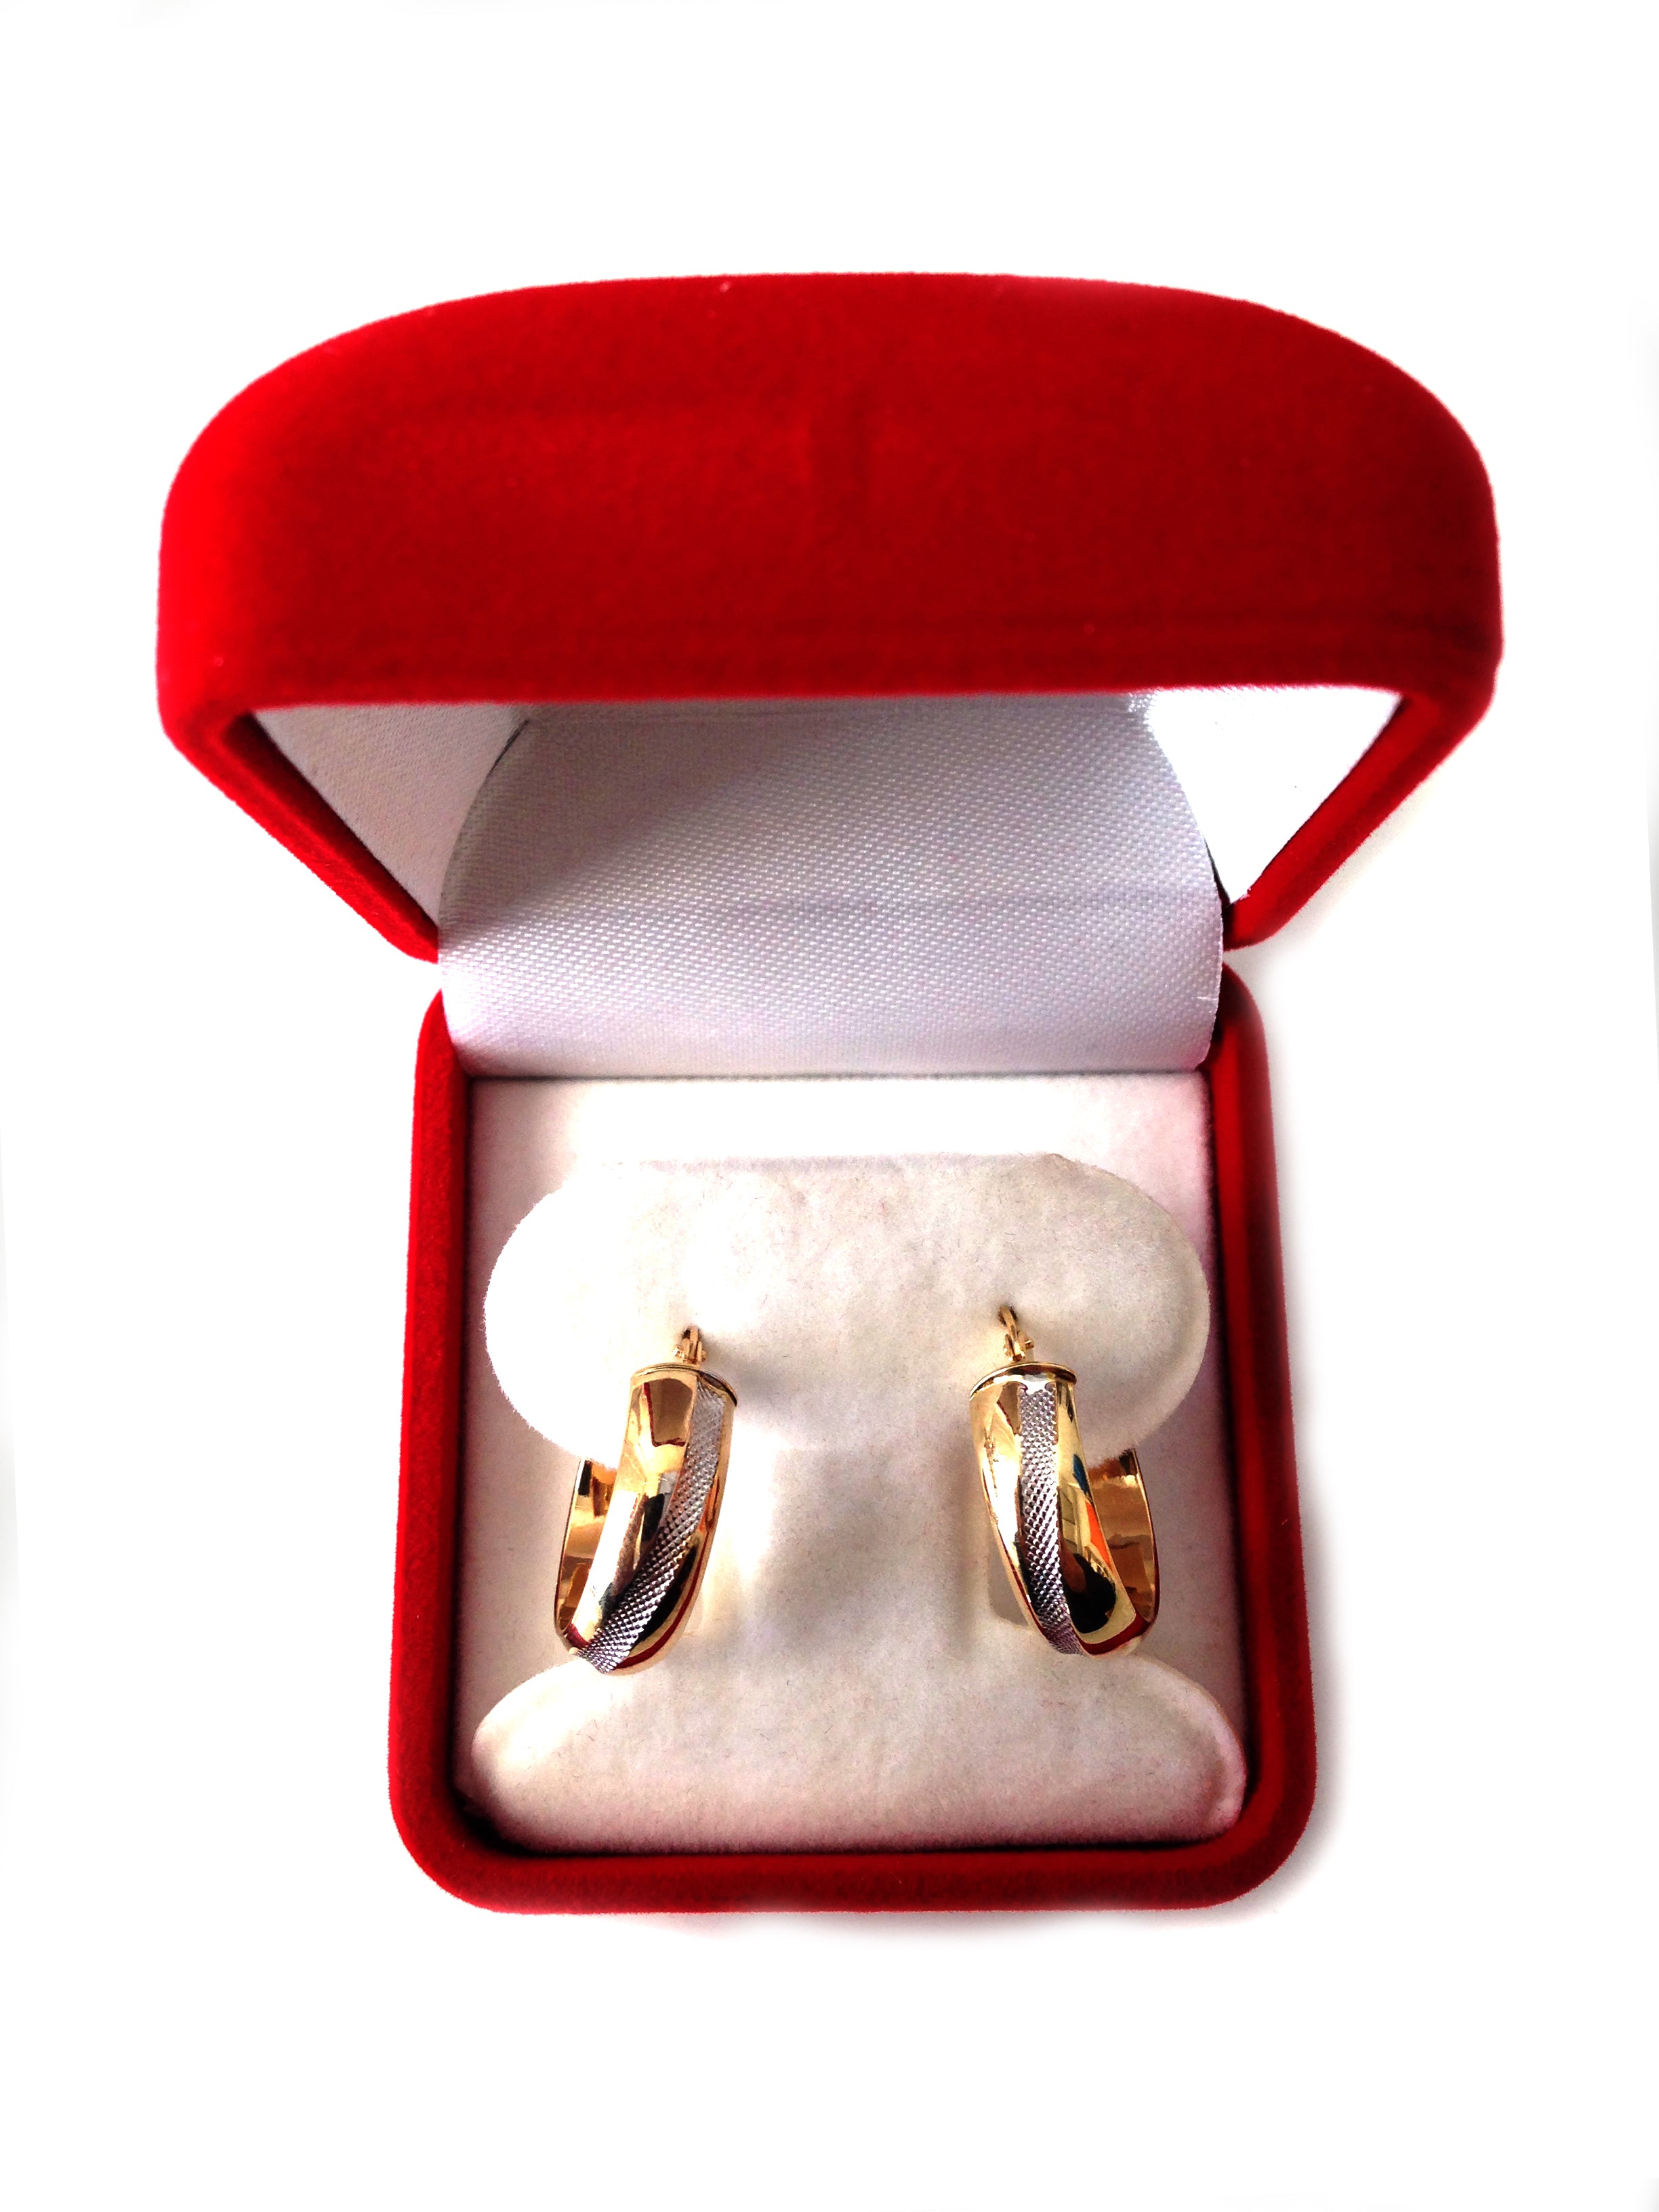 14K 2 Tone Gold Round Tube Hoop Earrings, Diameter 20mm fine designer jewelry for men and women